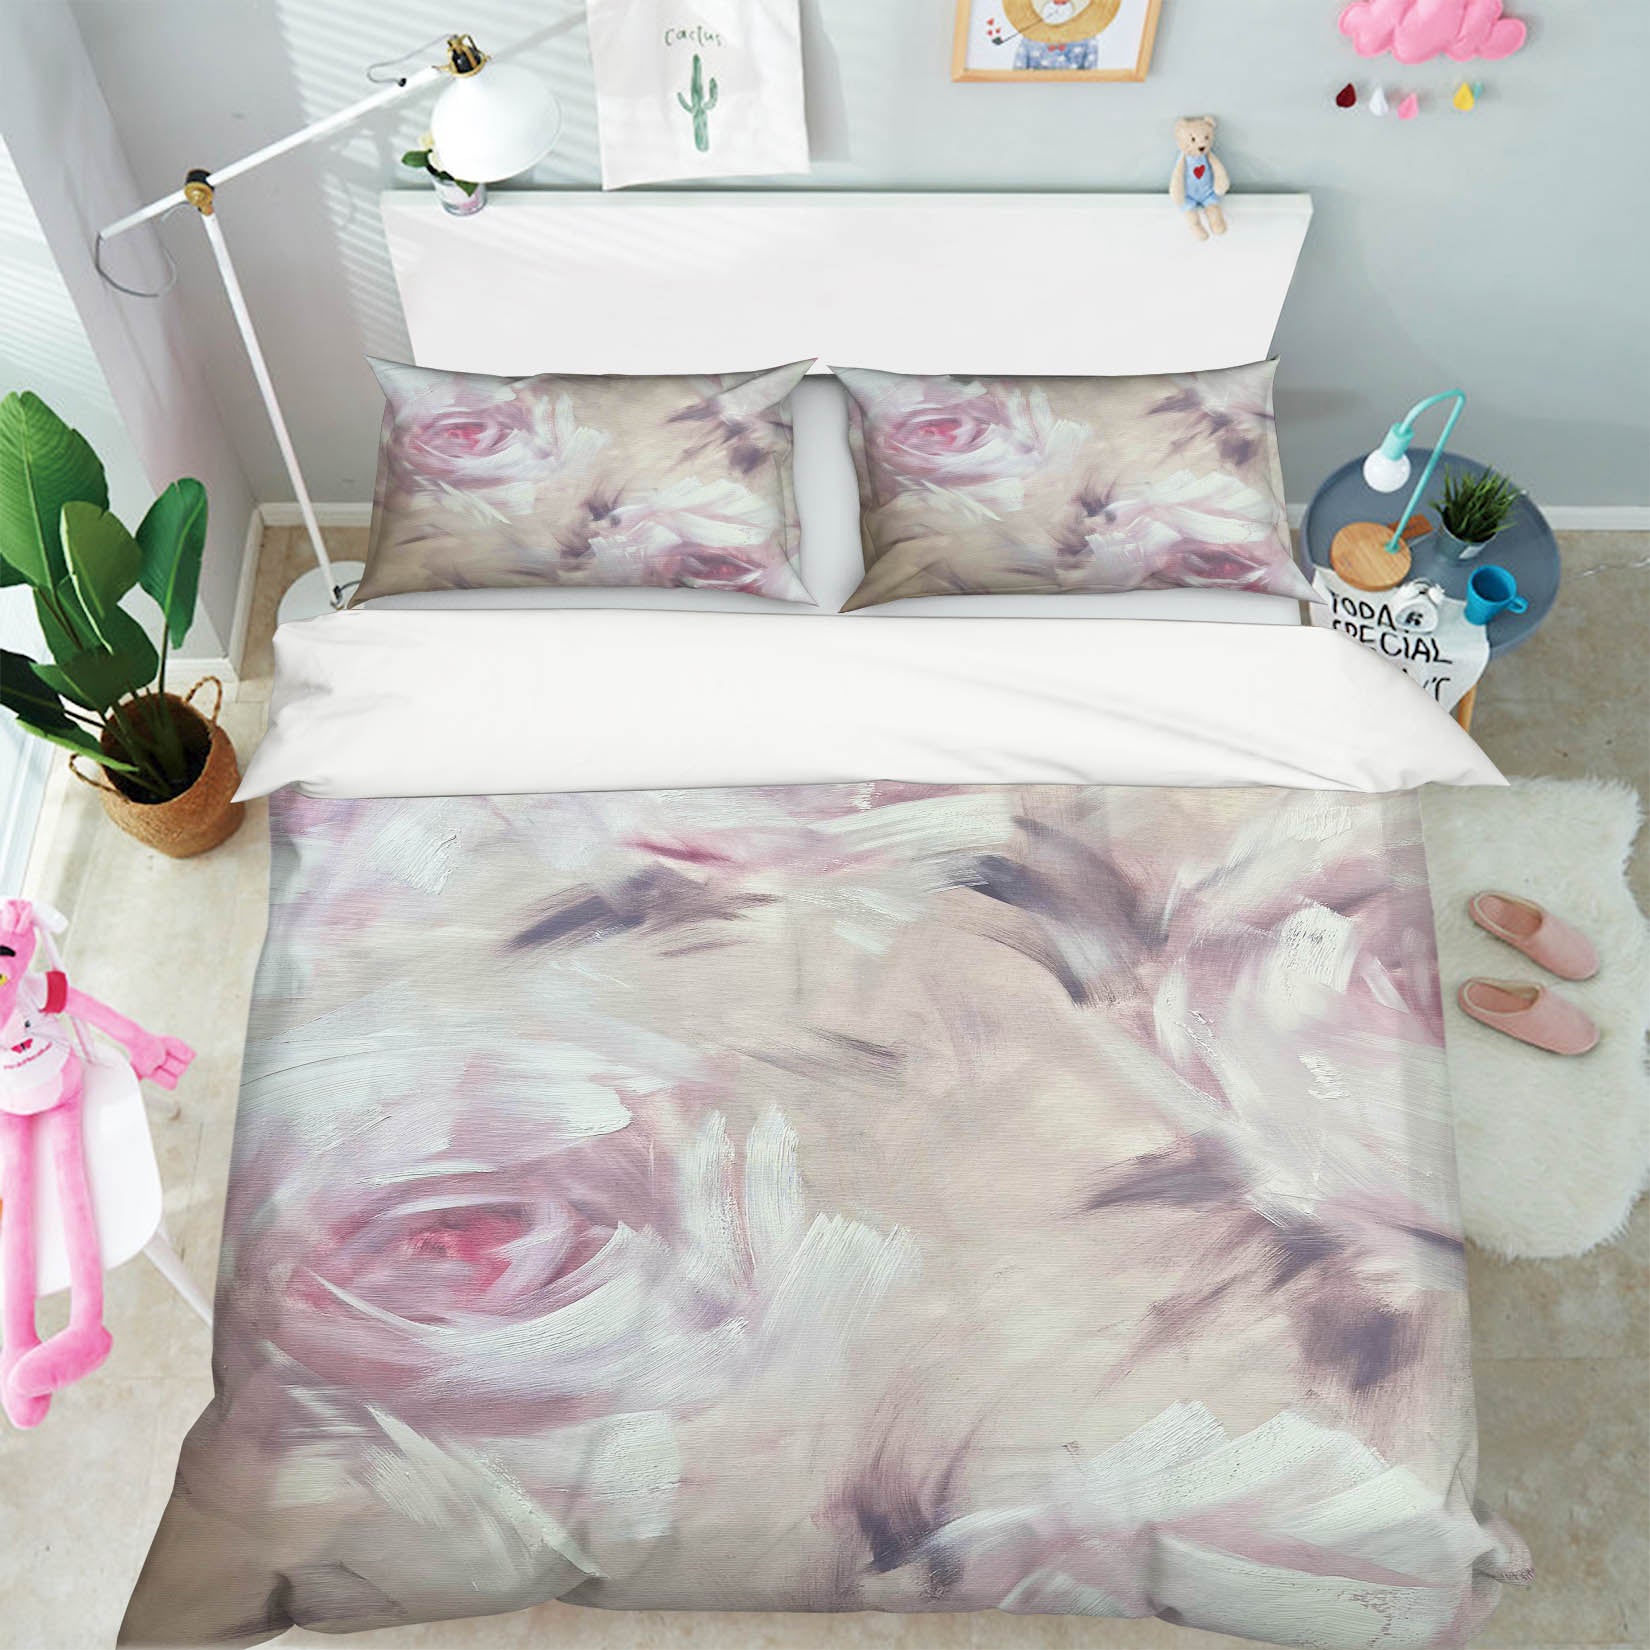 3D Soft Flower 3144 Skromova Marina Bedding Bed Pillowcases Quilt Cover Duvet Cover